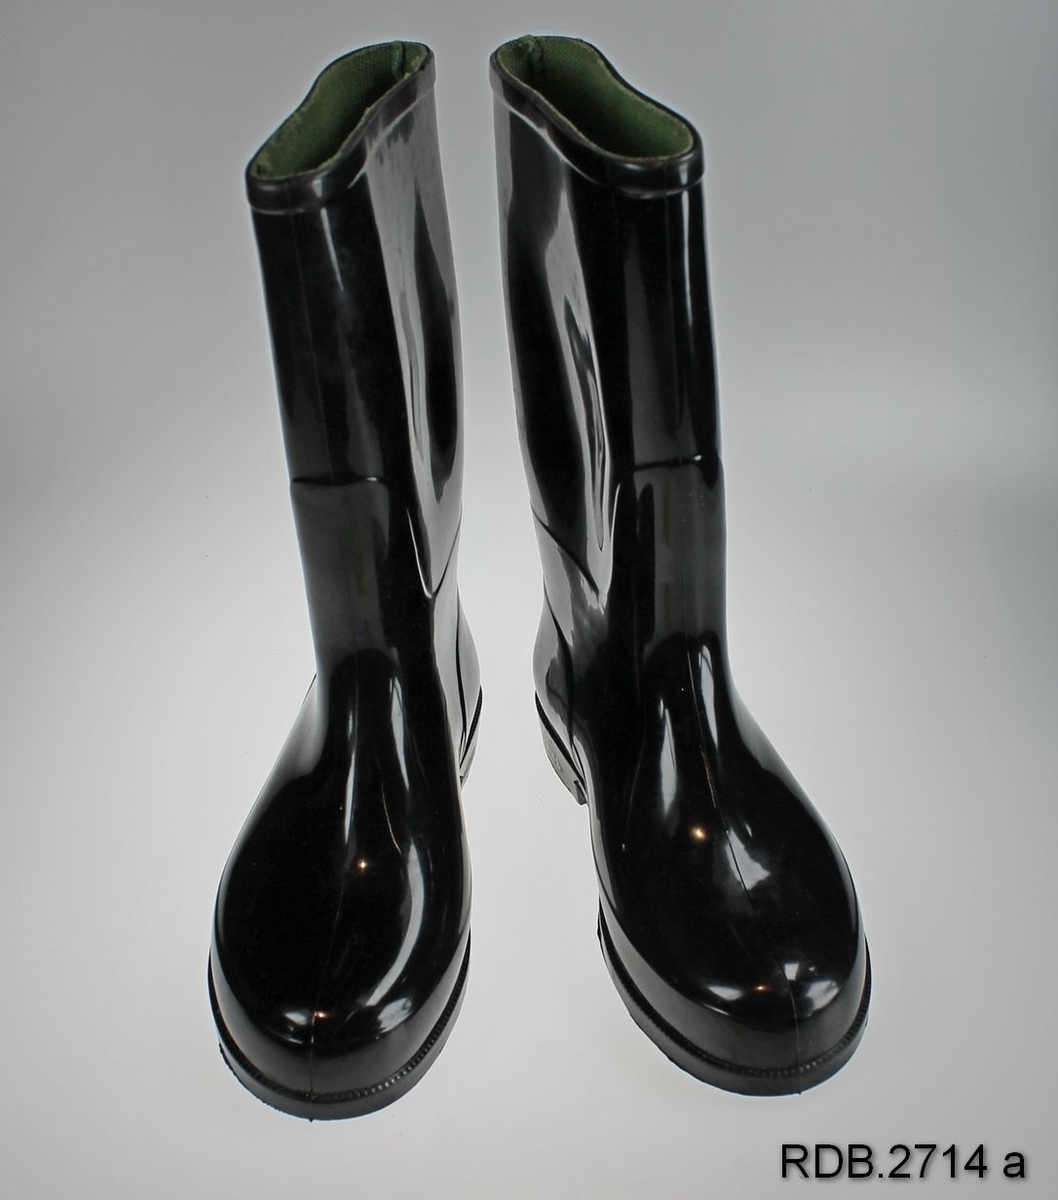 Et par nye, svarte gummistøvler str. 31. Støvlene er fôra med grønt stoff.